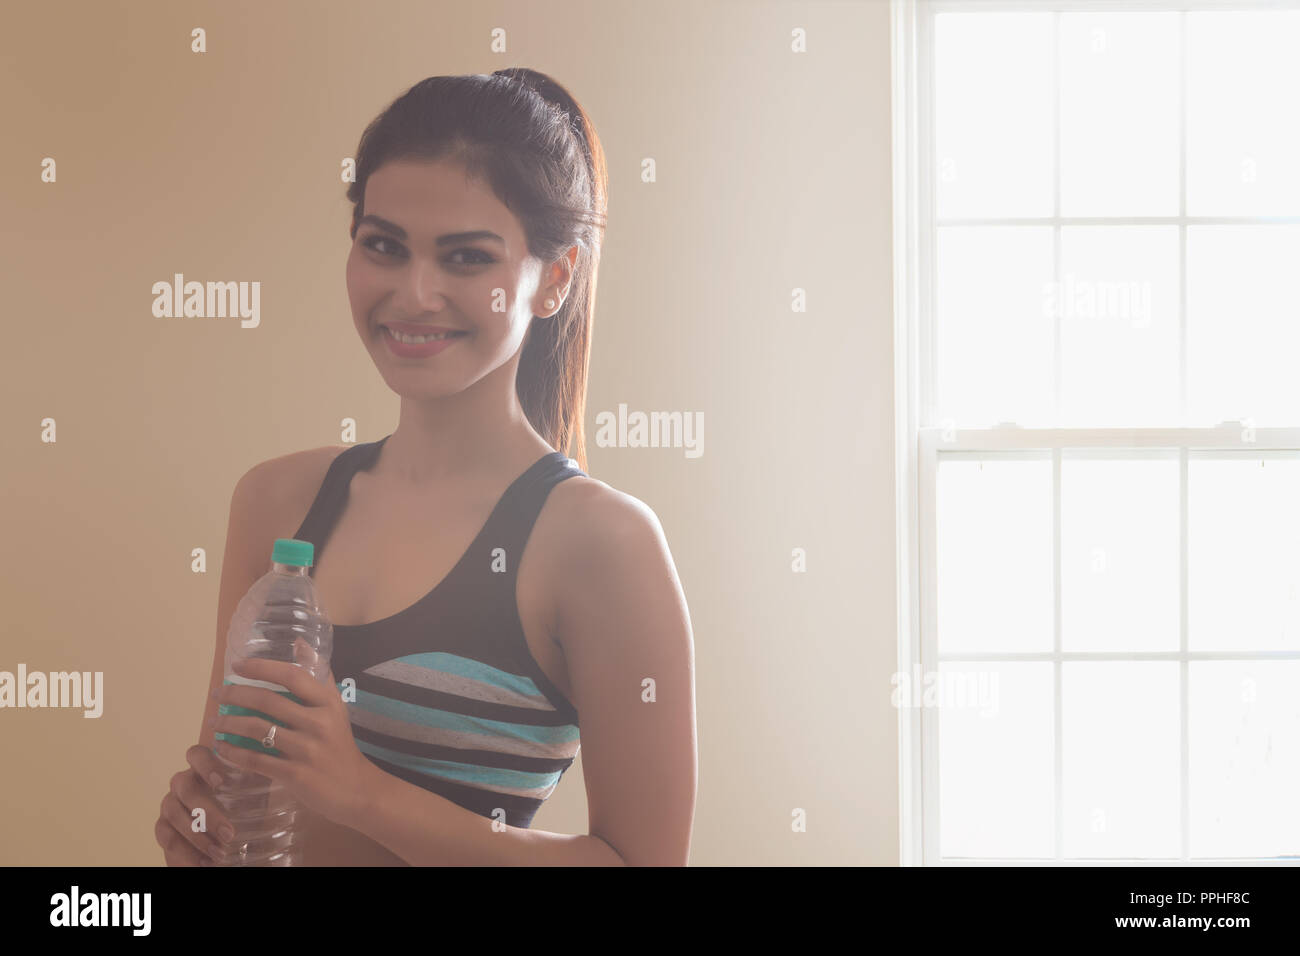 Retrato de una mujer sonriente en la celebración de una botella de agua de ropa de entrenamiento tras entrenamiento. Foto de stock